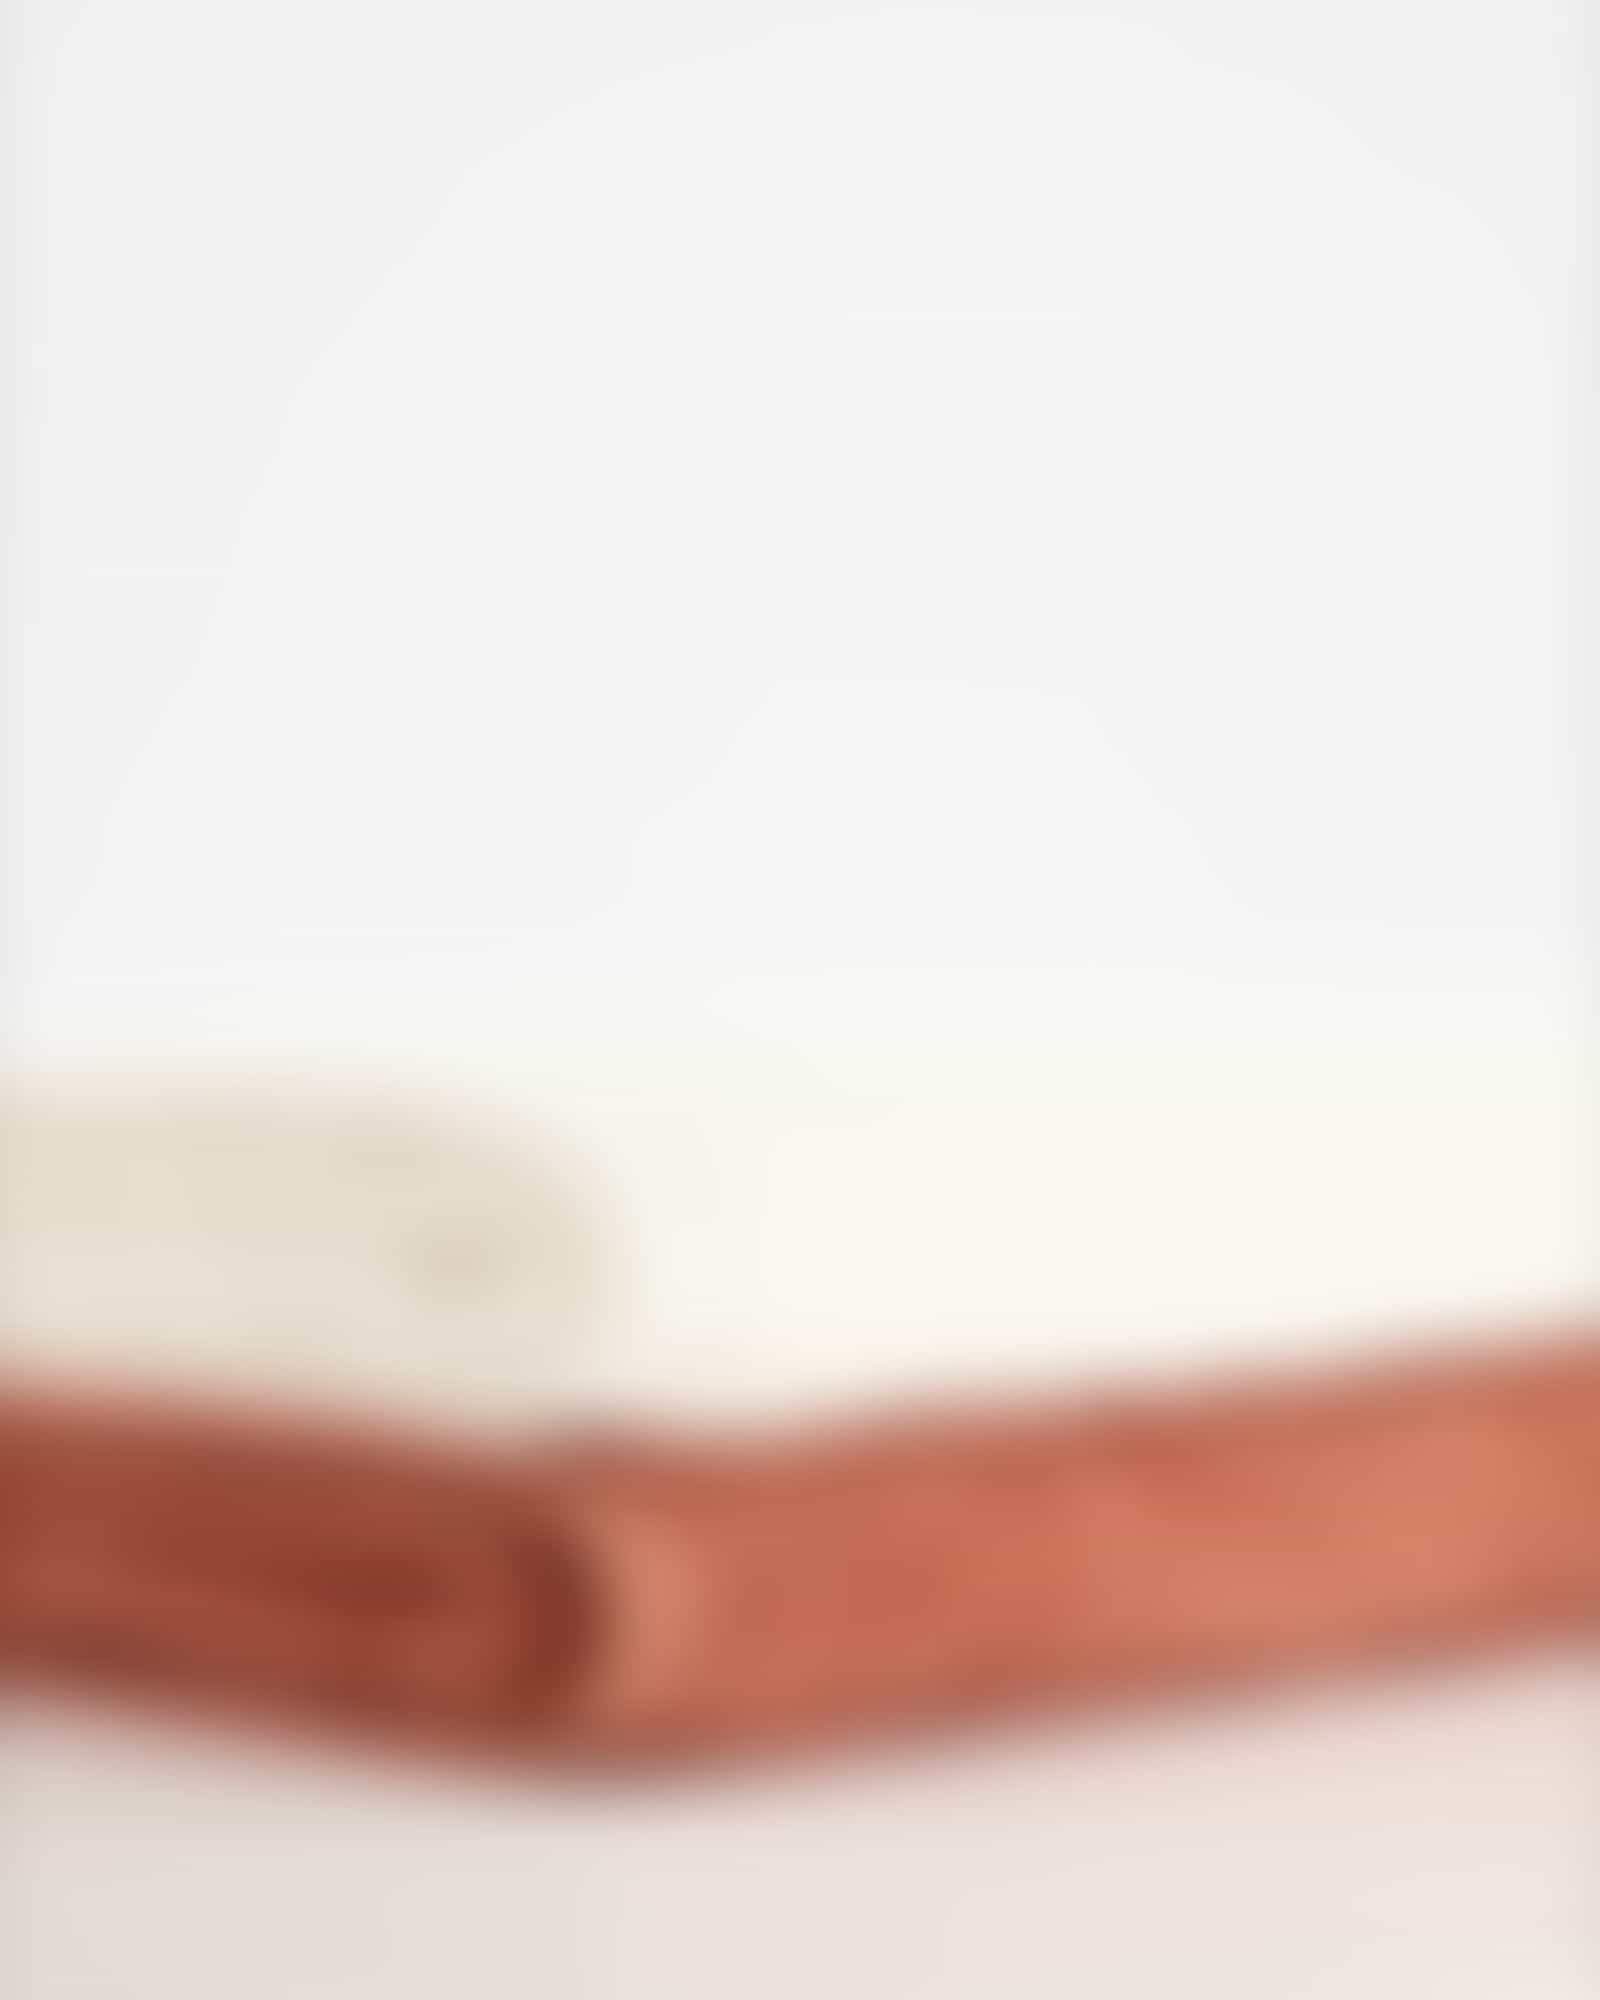 JOOP Uni Cornflower 1670 - Farbe: Creme - 356 - Handtuch 50x100 cm